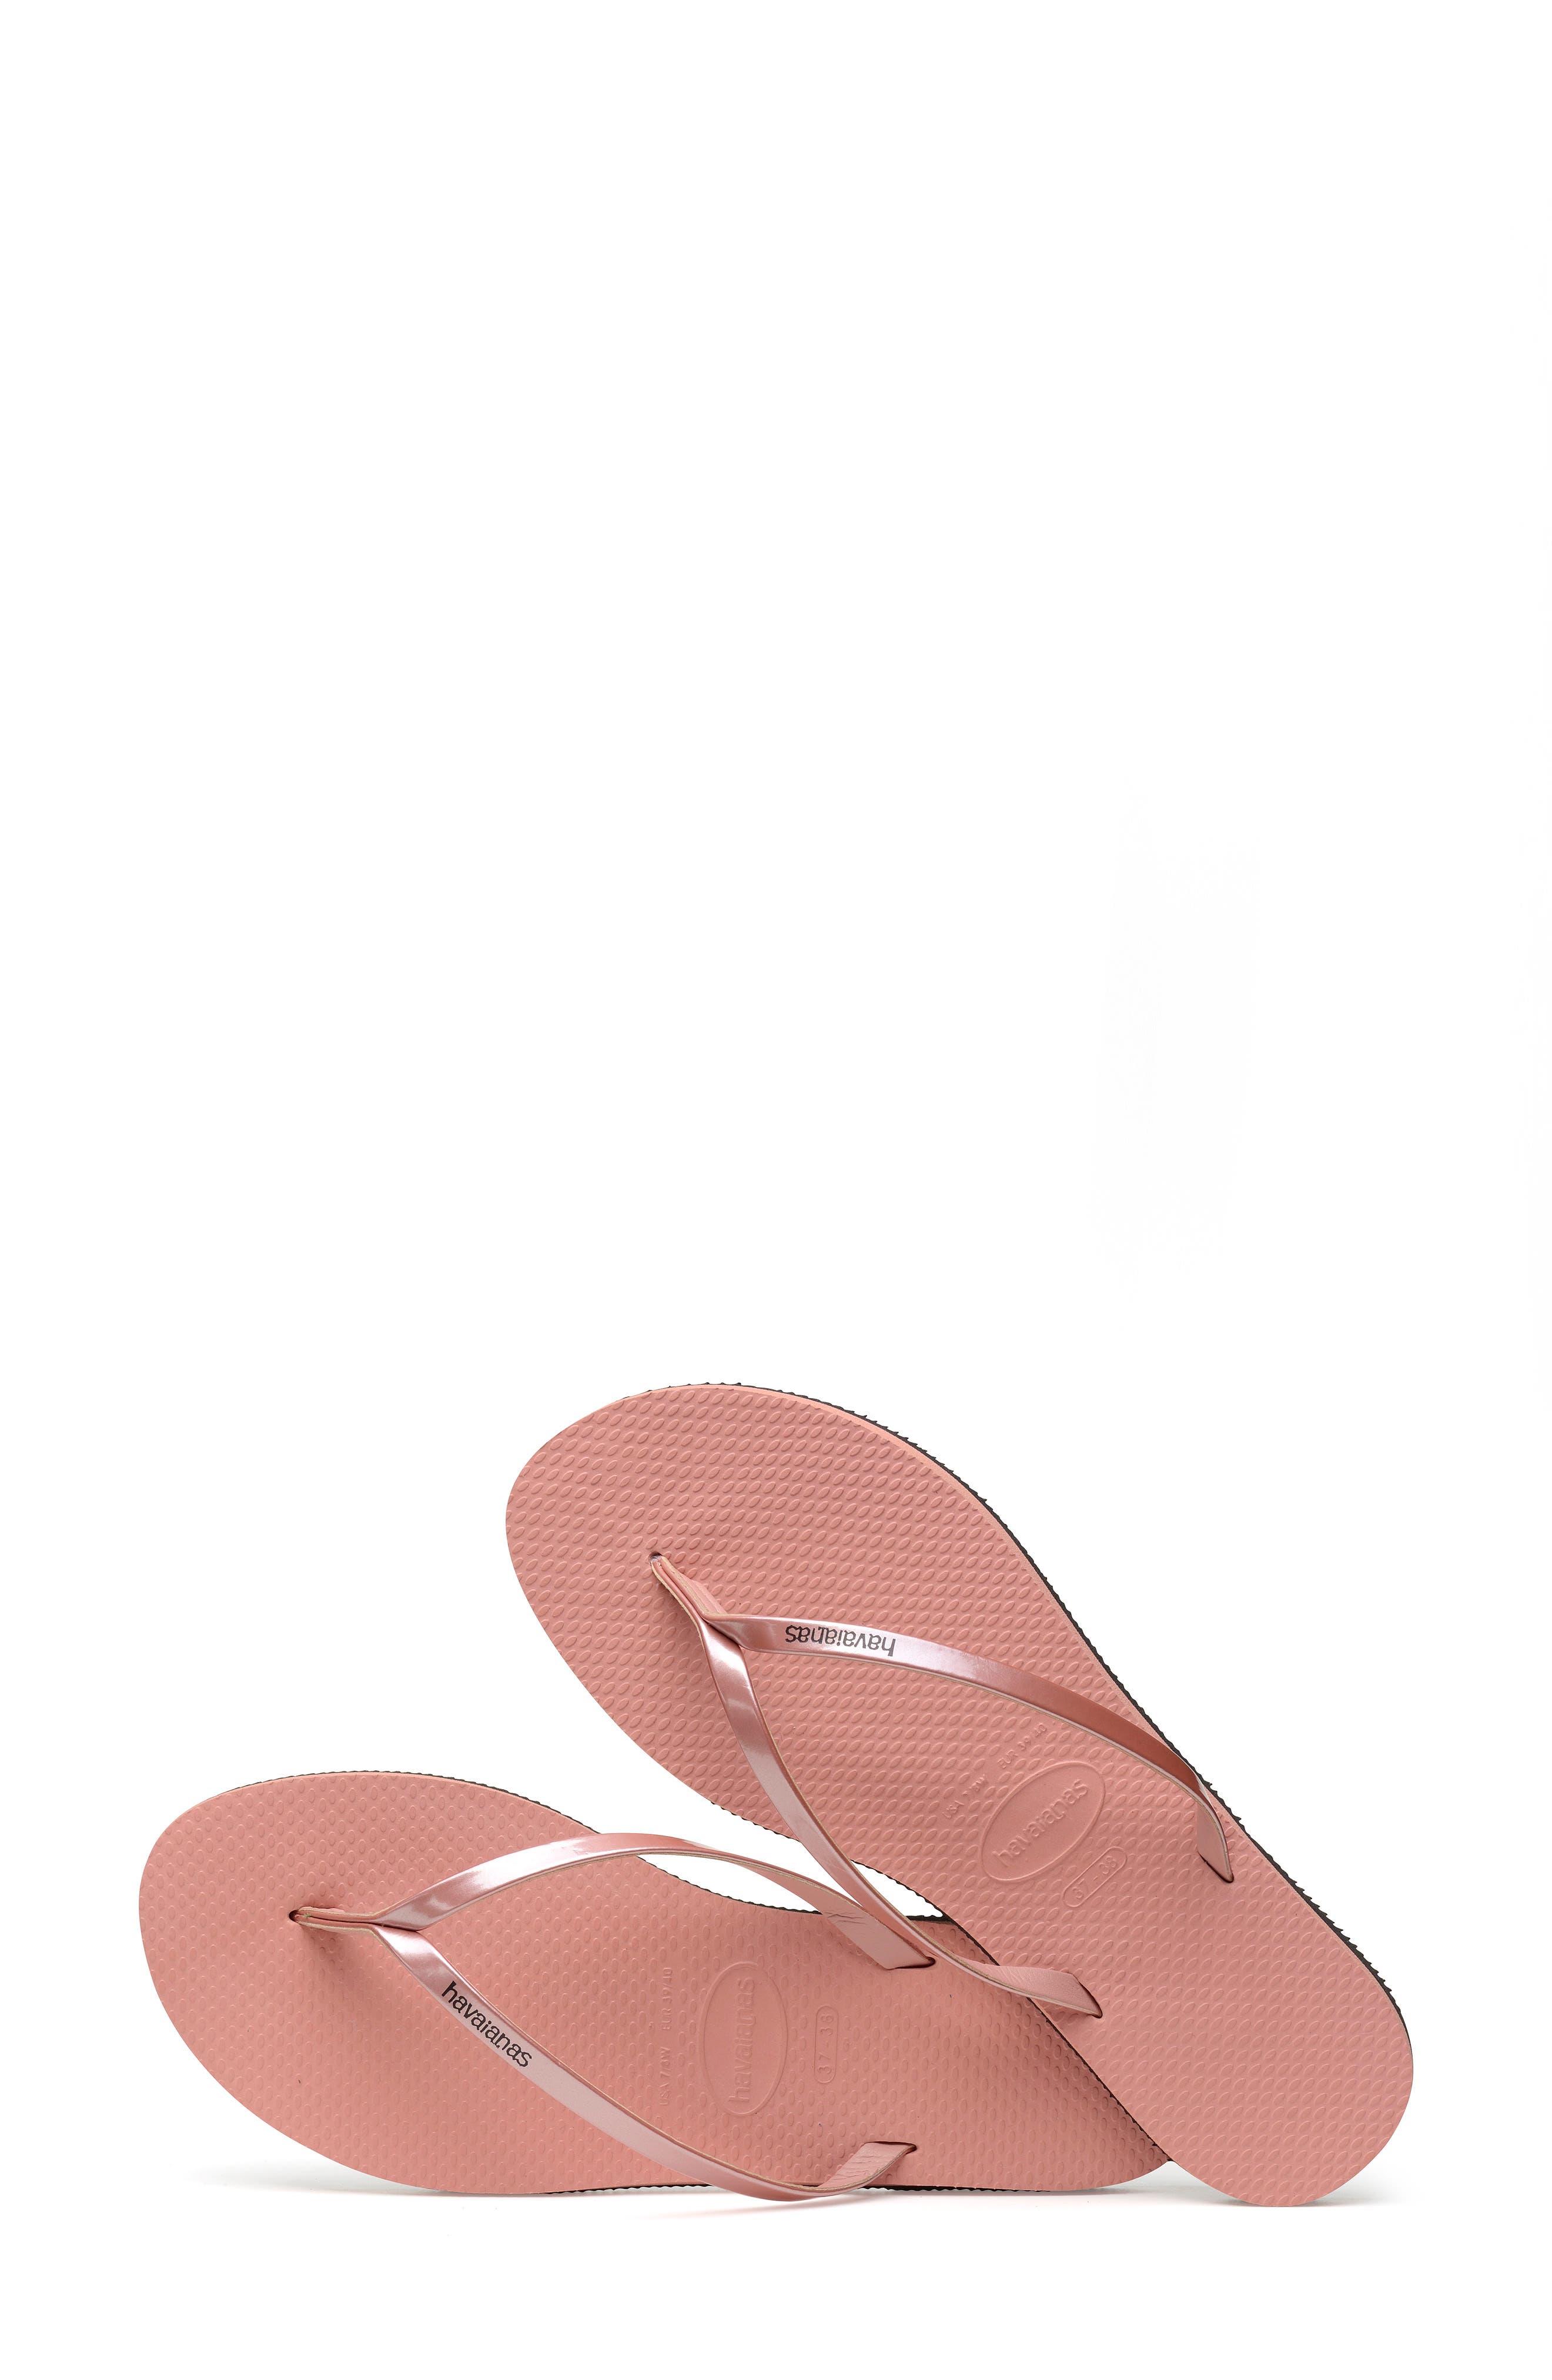 metallic havaianas flip flops